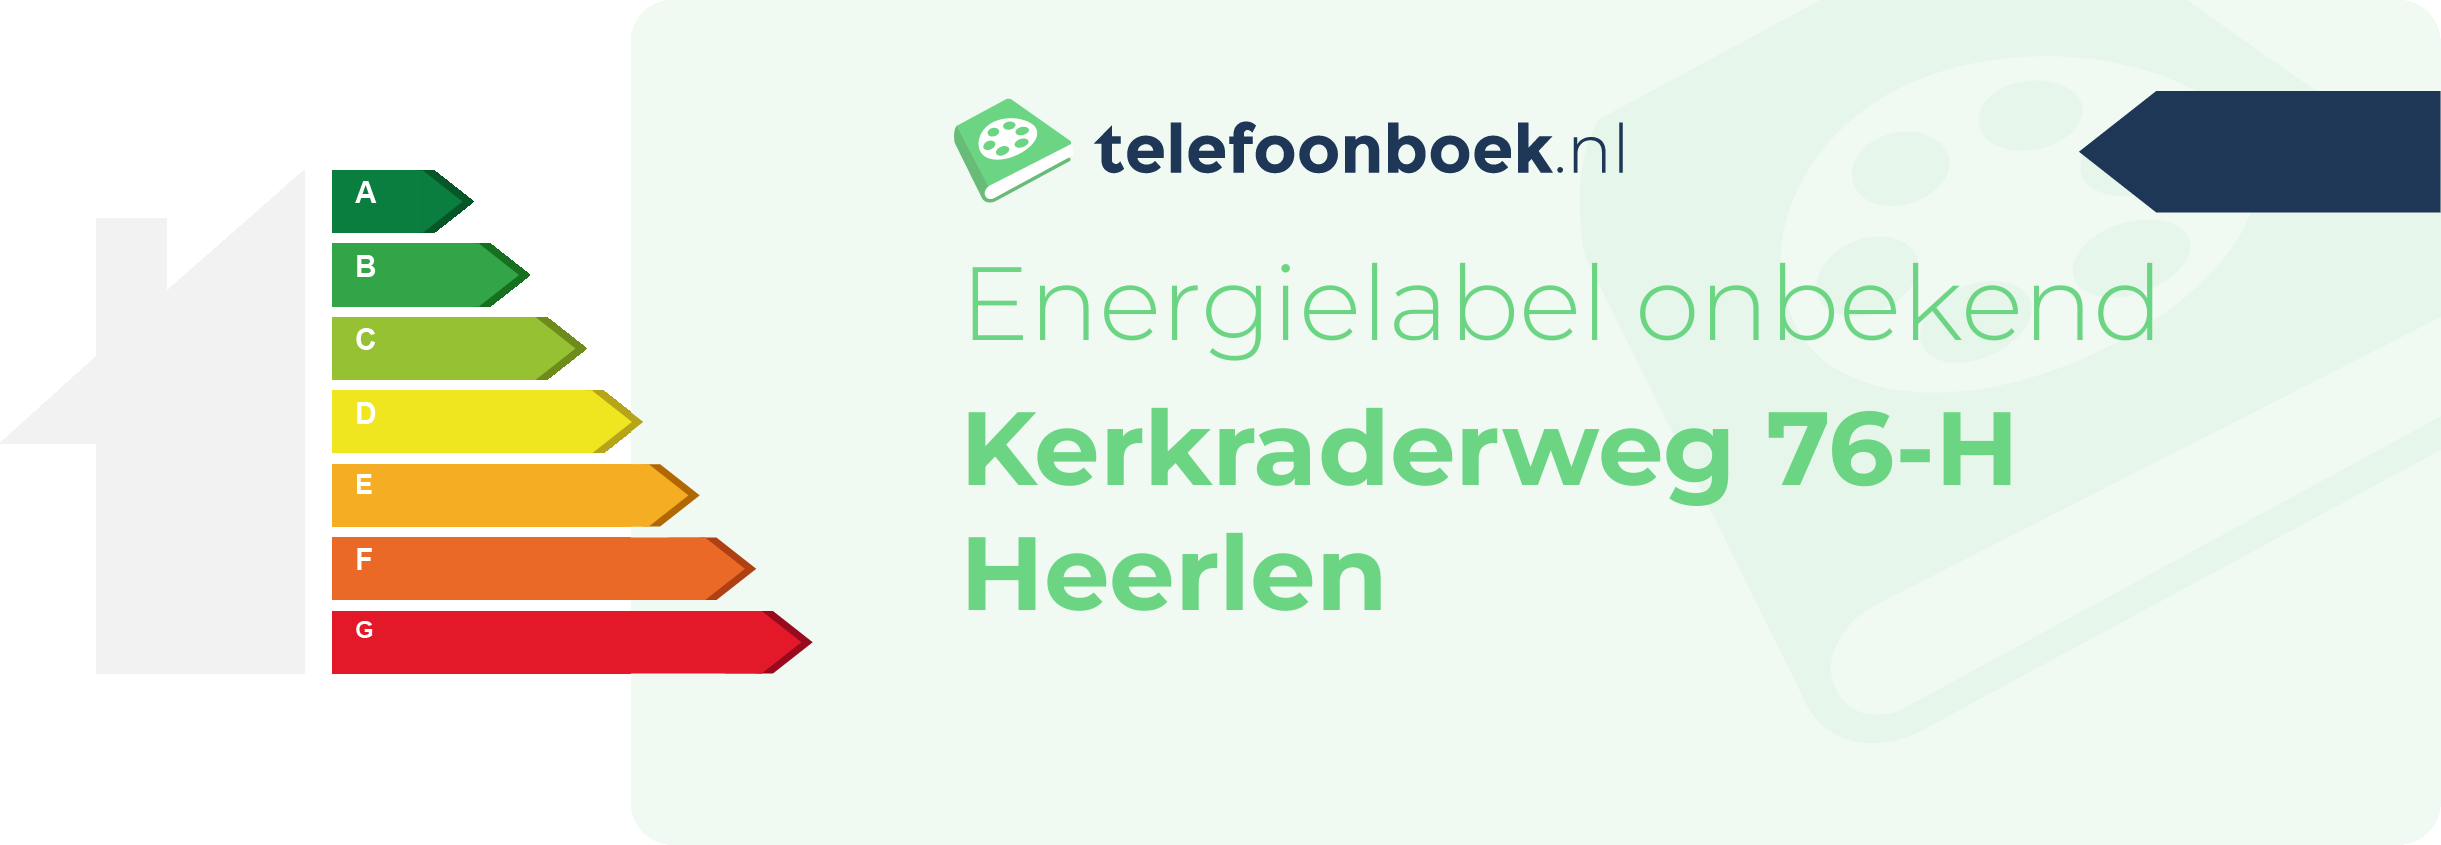 Energielabel Kerkraderweg 76-H Heerlen